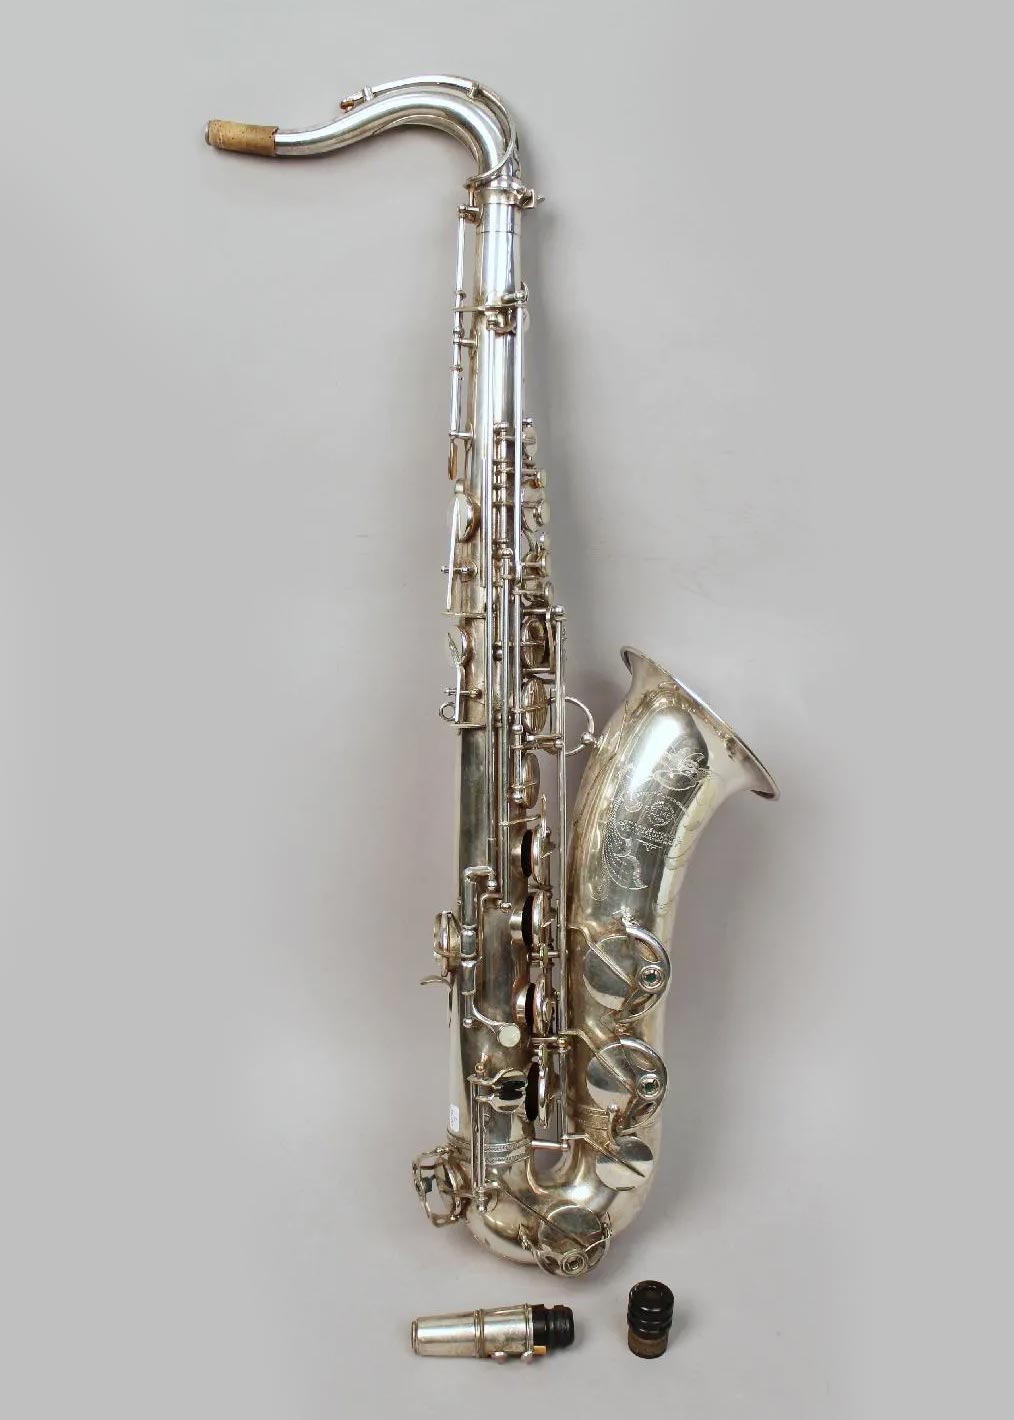 Saxophone ténor en métal argenté de SELMER modèle Balanced Action de 1944, pavillon gravé Instrument mis en vente par Vichy Enchères le 10 décembre 2016 © C. Darbelet